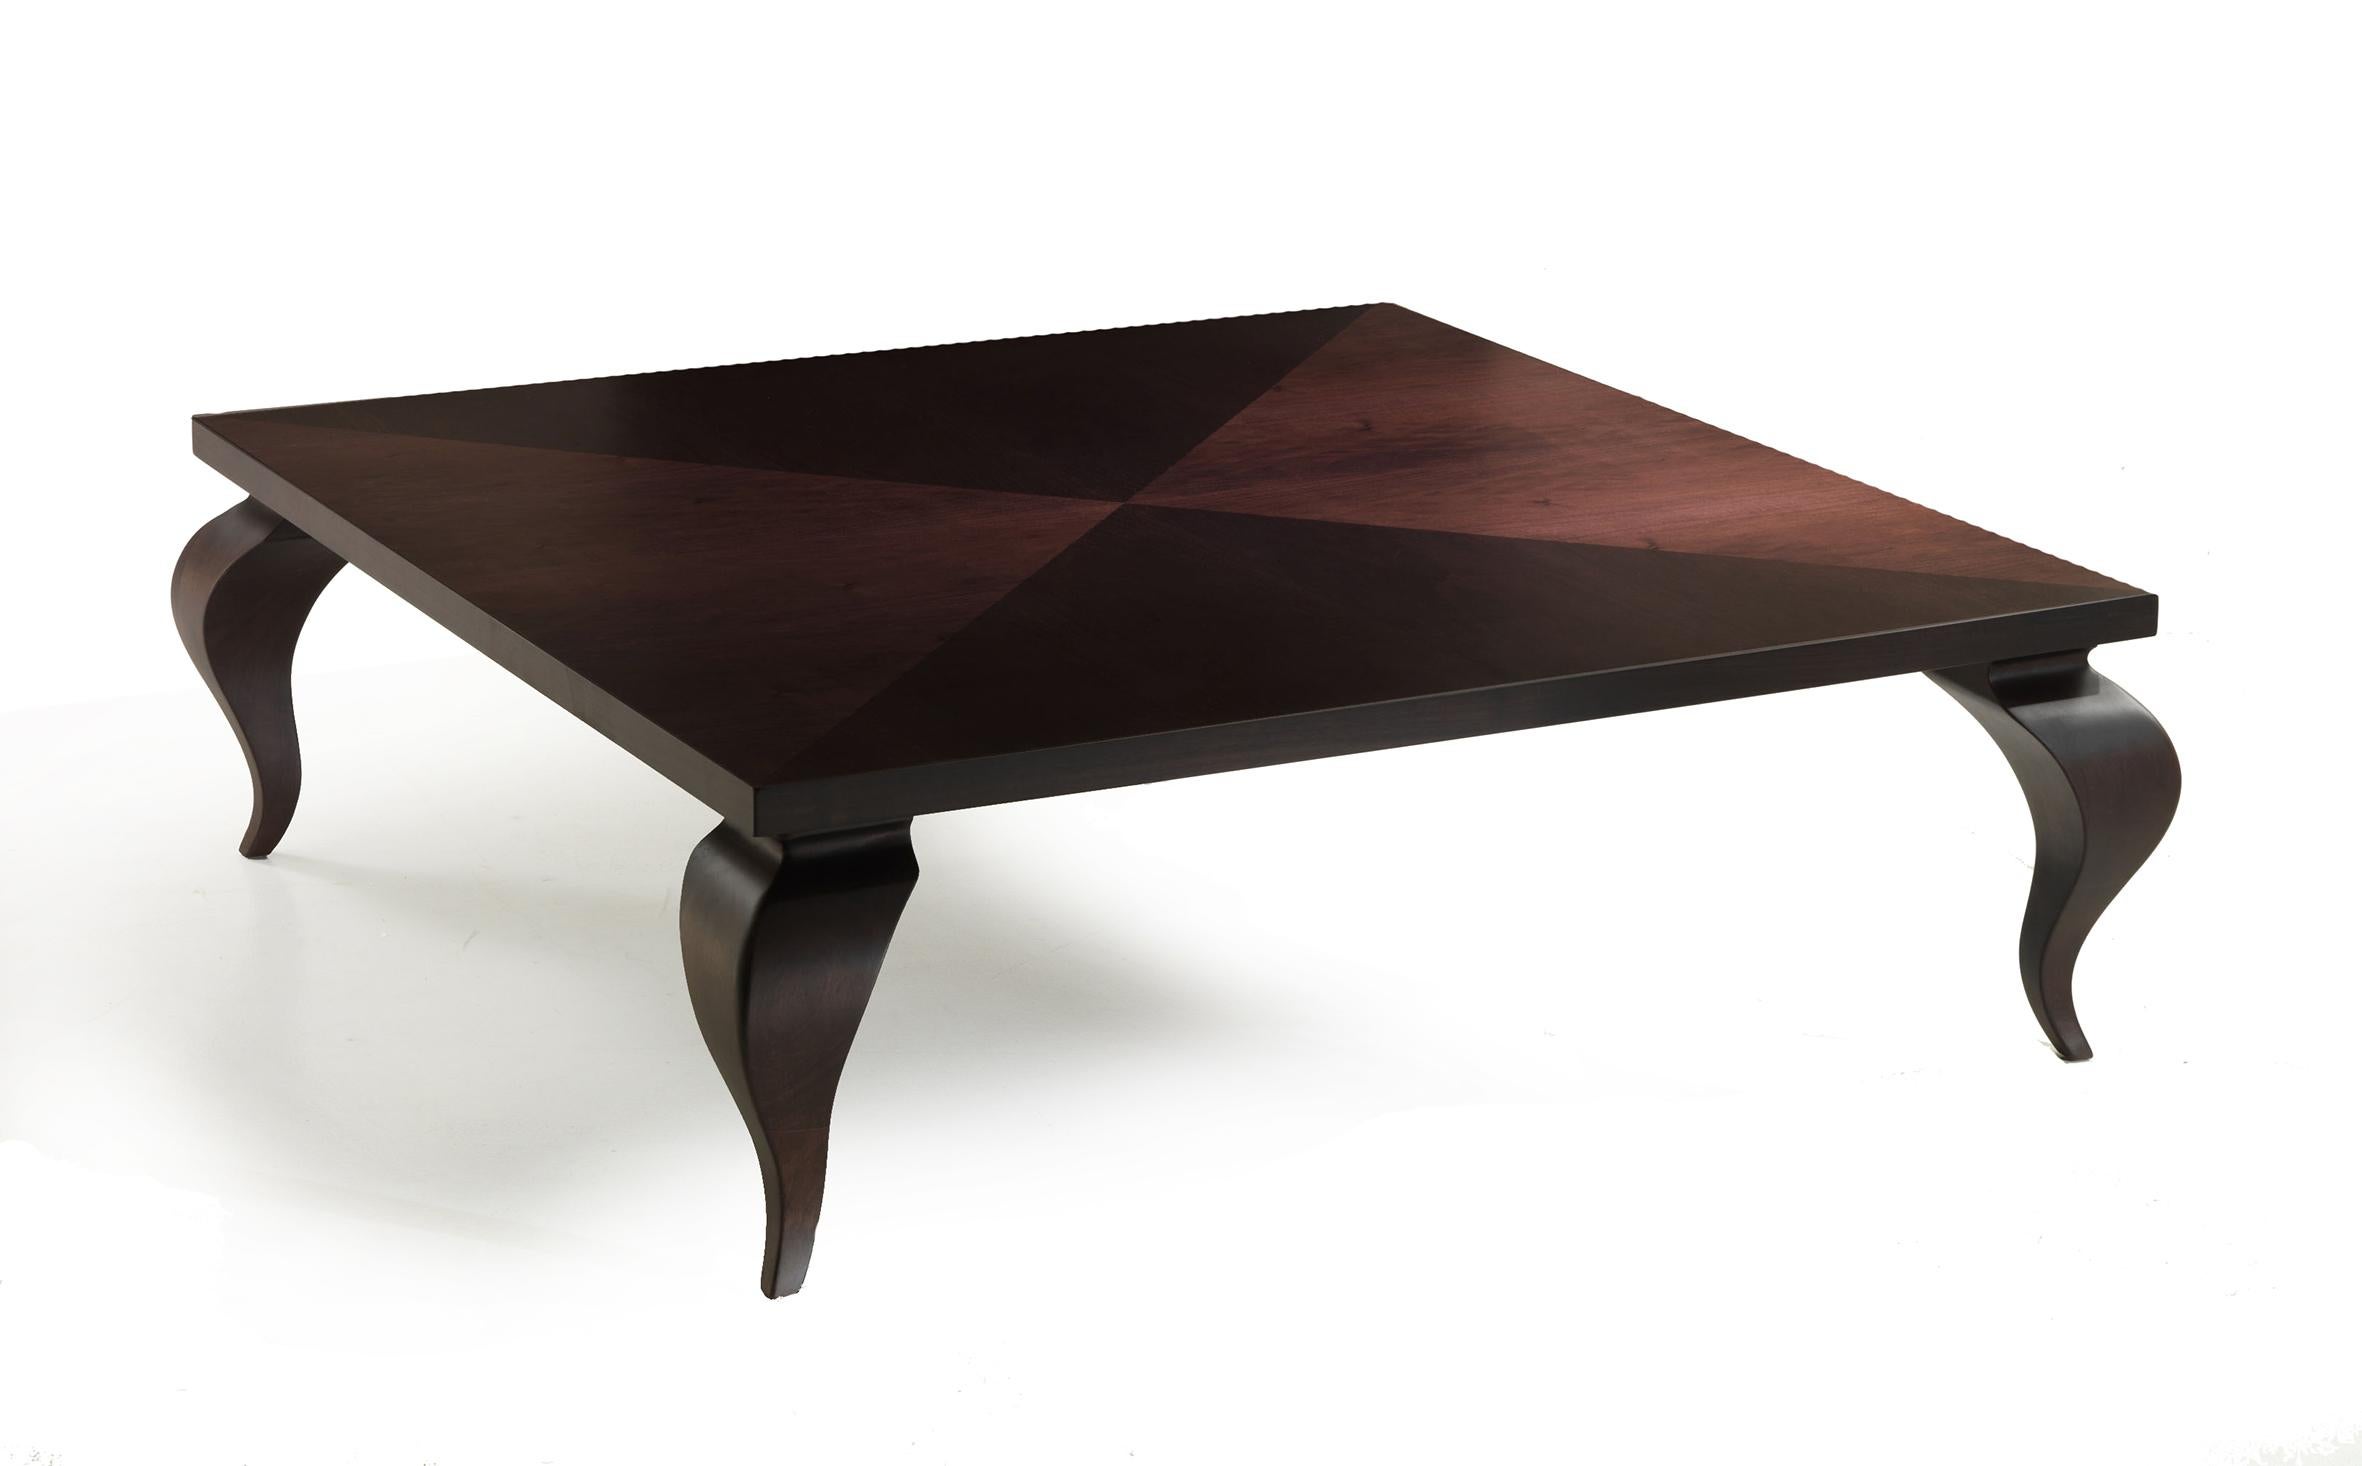 Voici la table à cocktail Duon-ino, un chef-d'œuvre de design imaginé par le talentueux Aldo Cibic. Cette création italienne artisanale est une célébration des contrastes, où une grande surface carrée à la précision angulaire rencontre l'allure